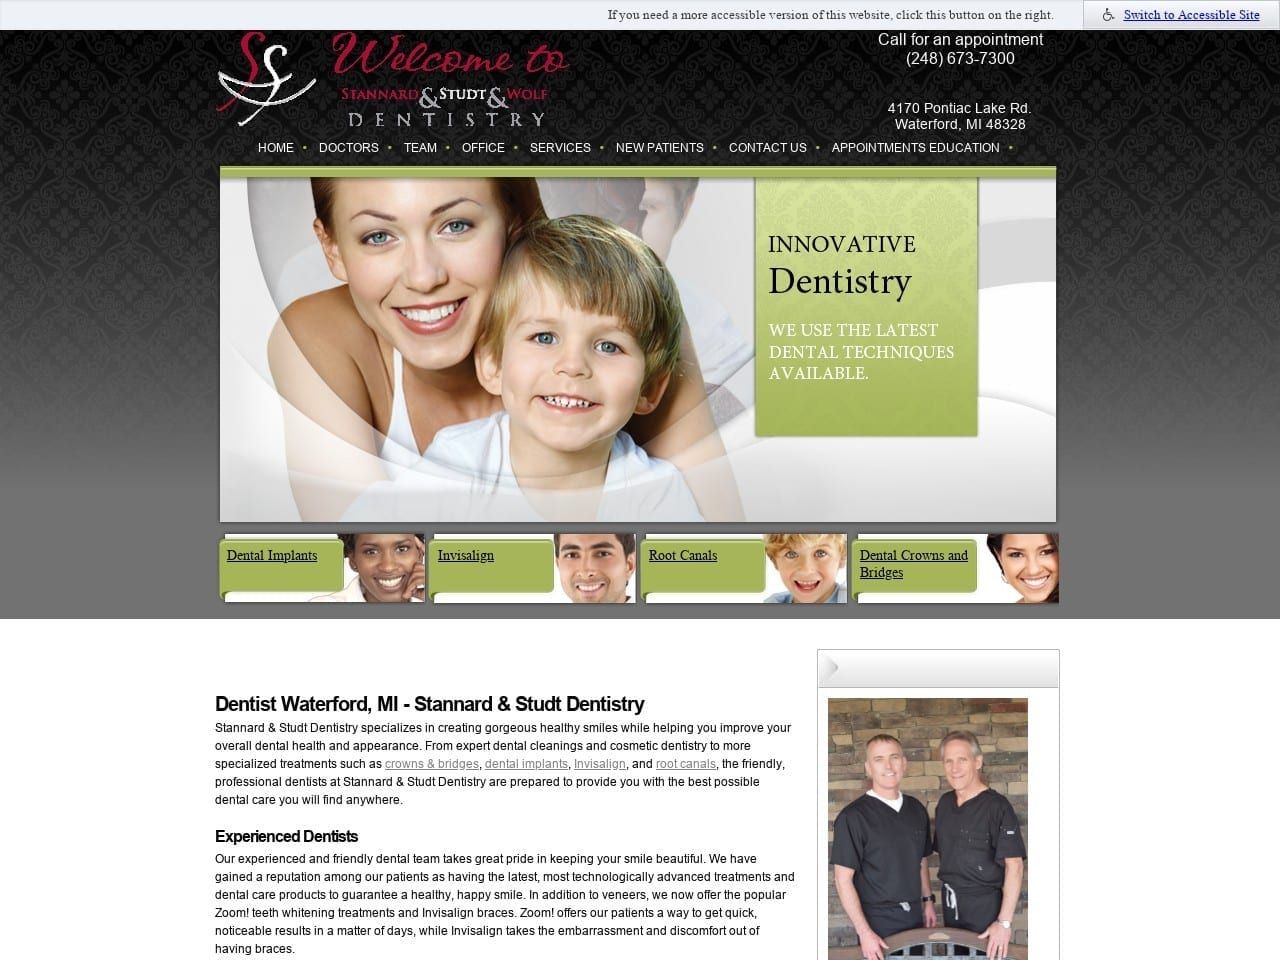 Dr. Sean P. Stannard DDS Website Screenshot from stannardstudt.com